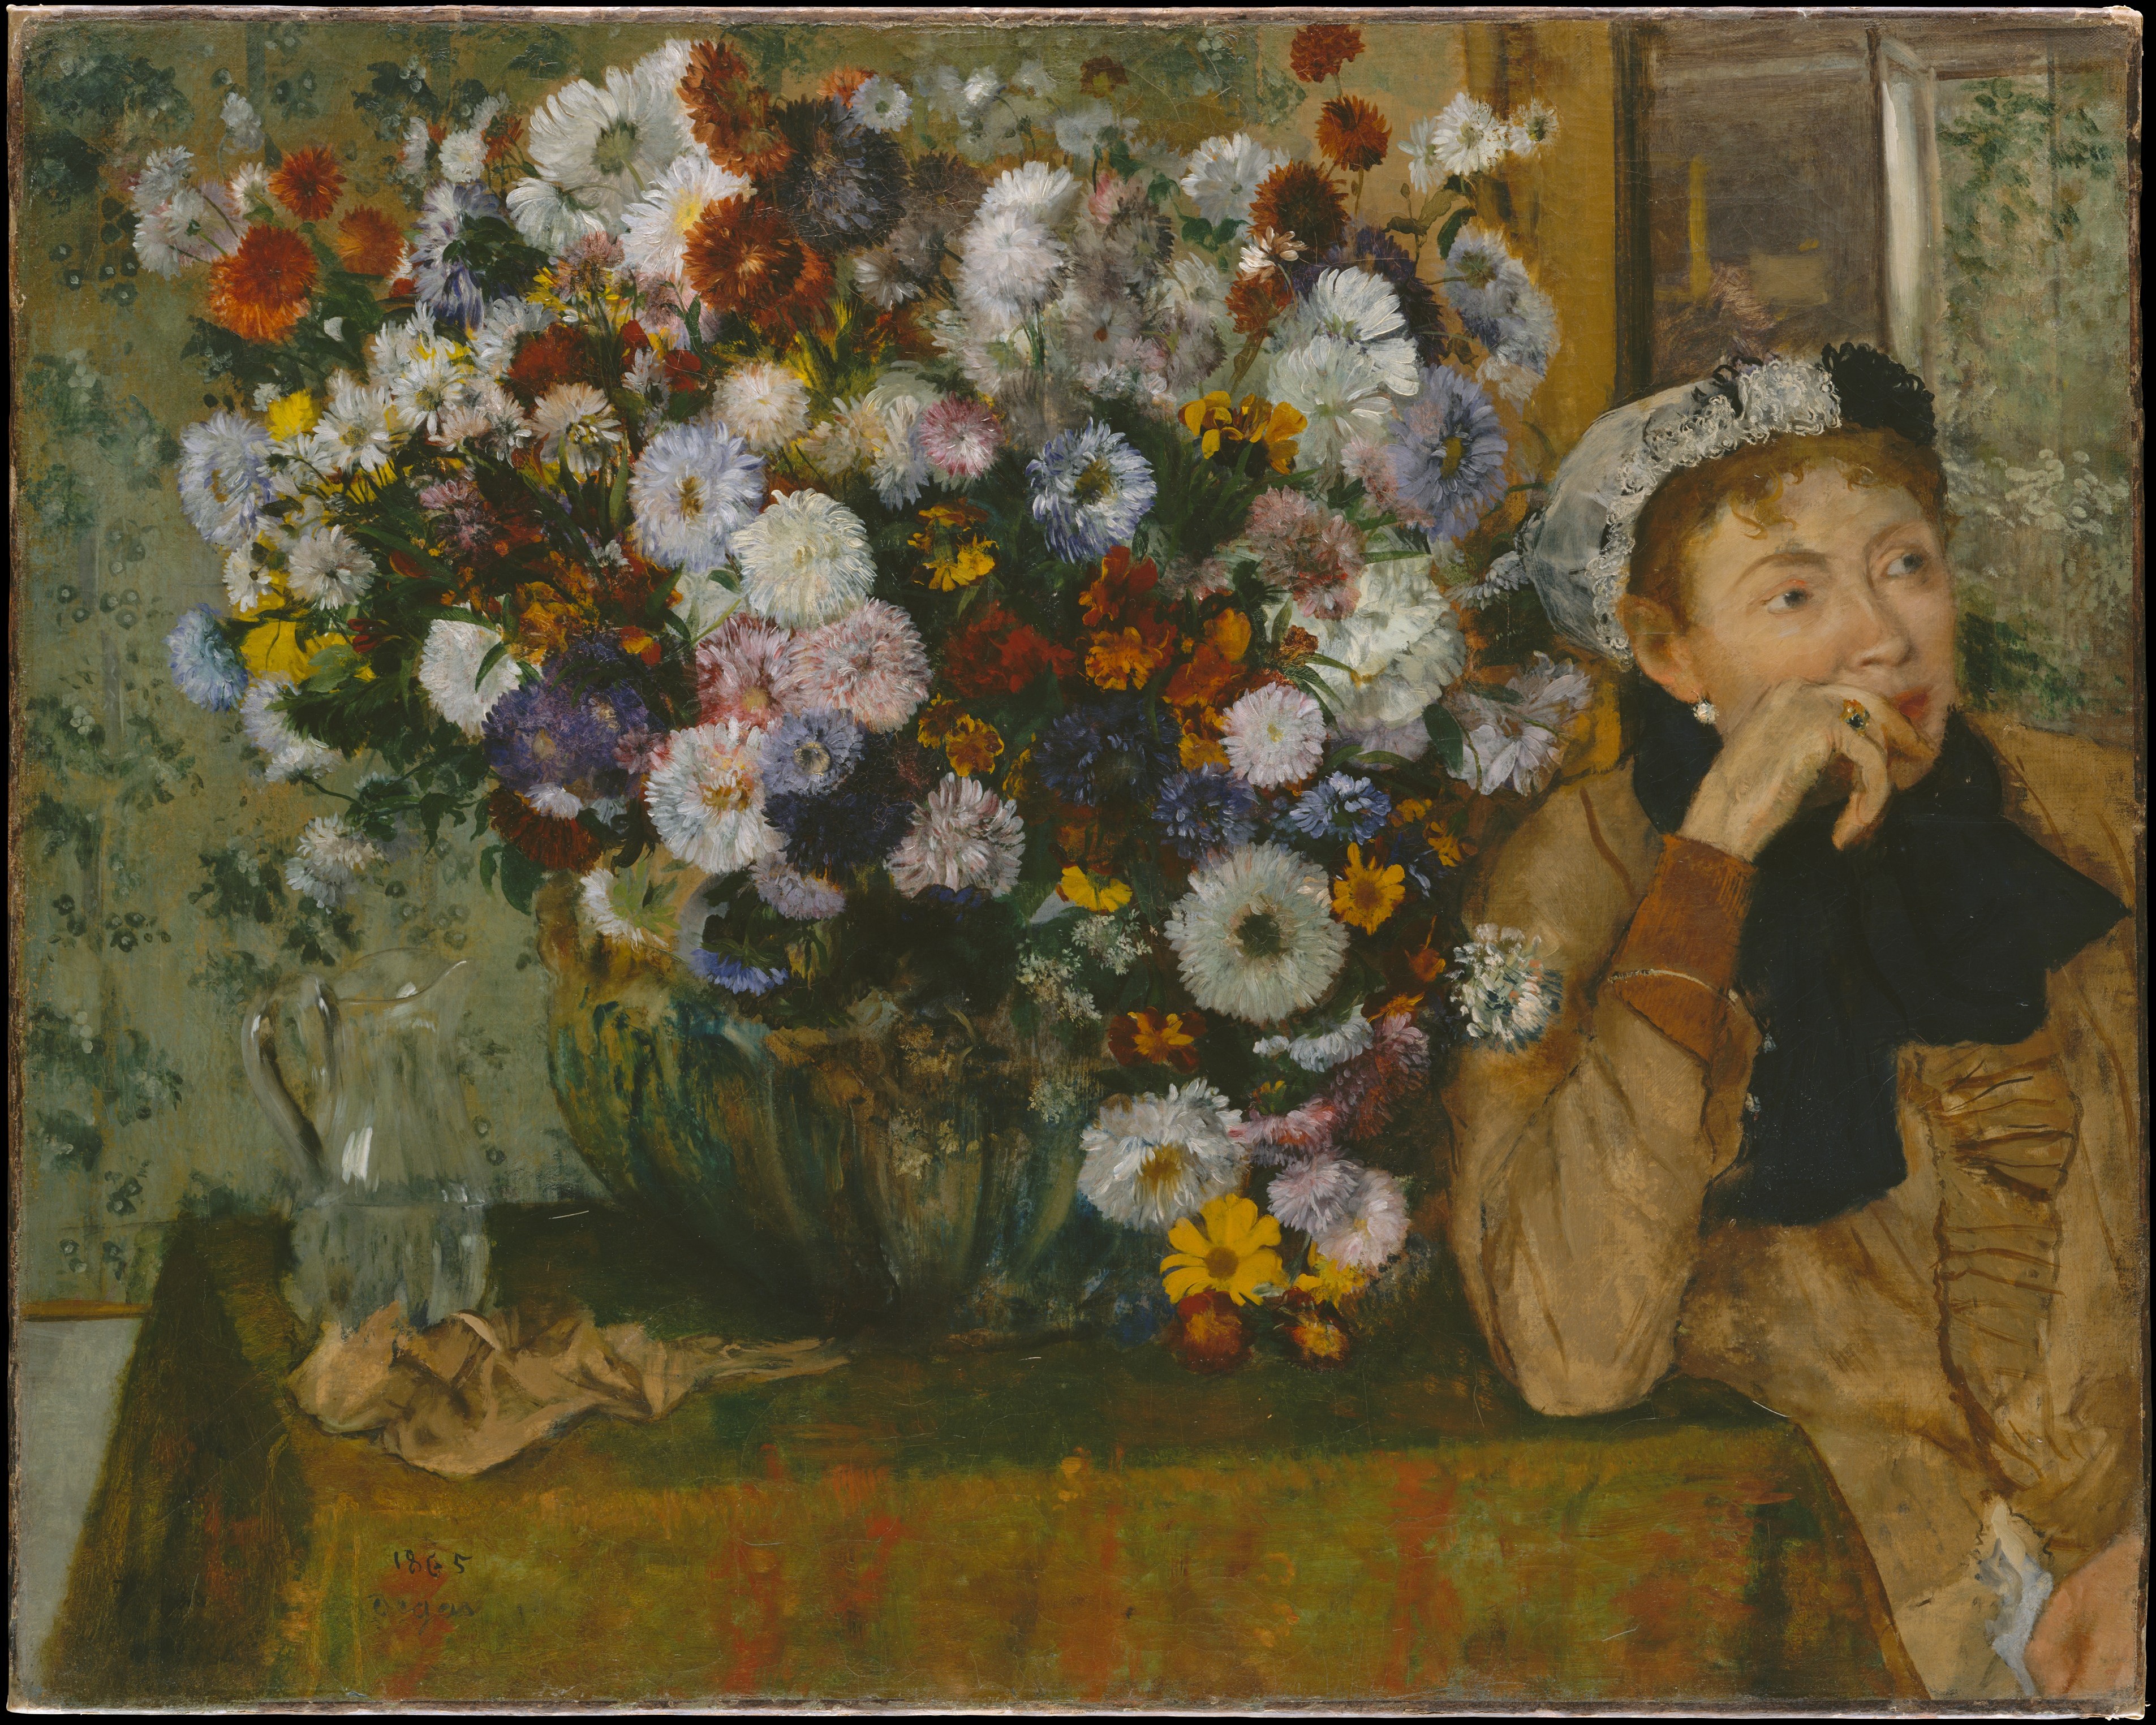 Çiçek Vazolarının Yanında Oturan Kadın (Madam Paul Valpinçon?) by Edgar Degas - 1865 - 73.7 x 92.7 cm 